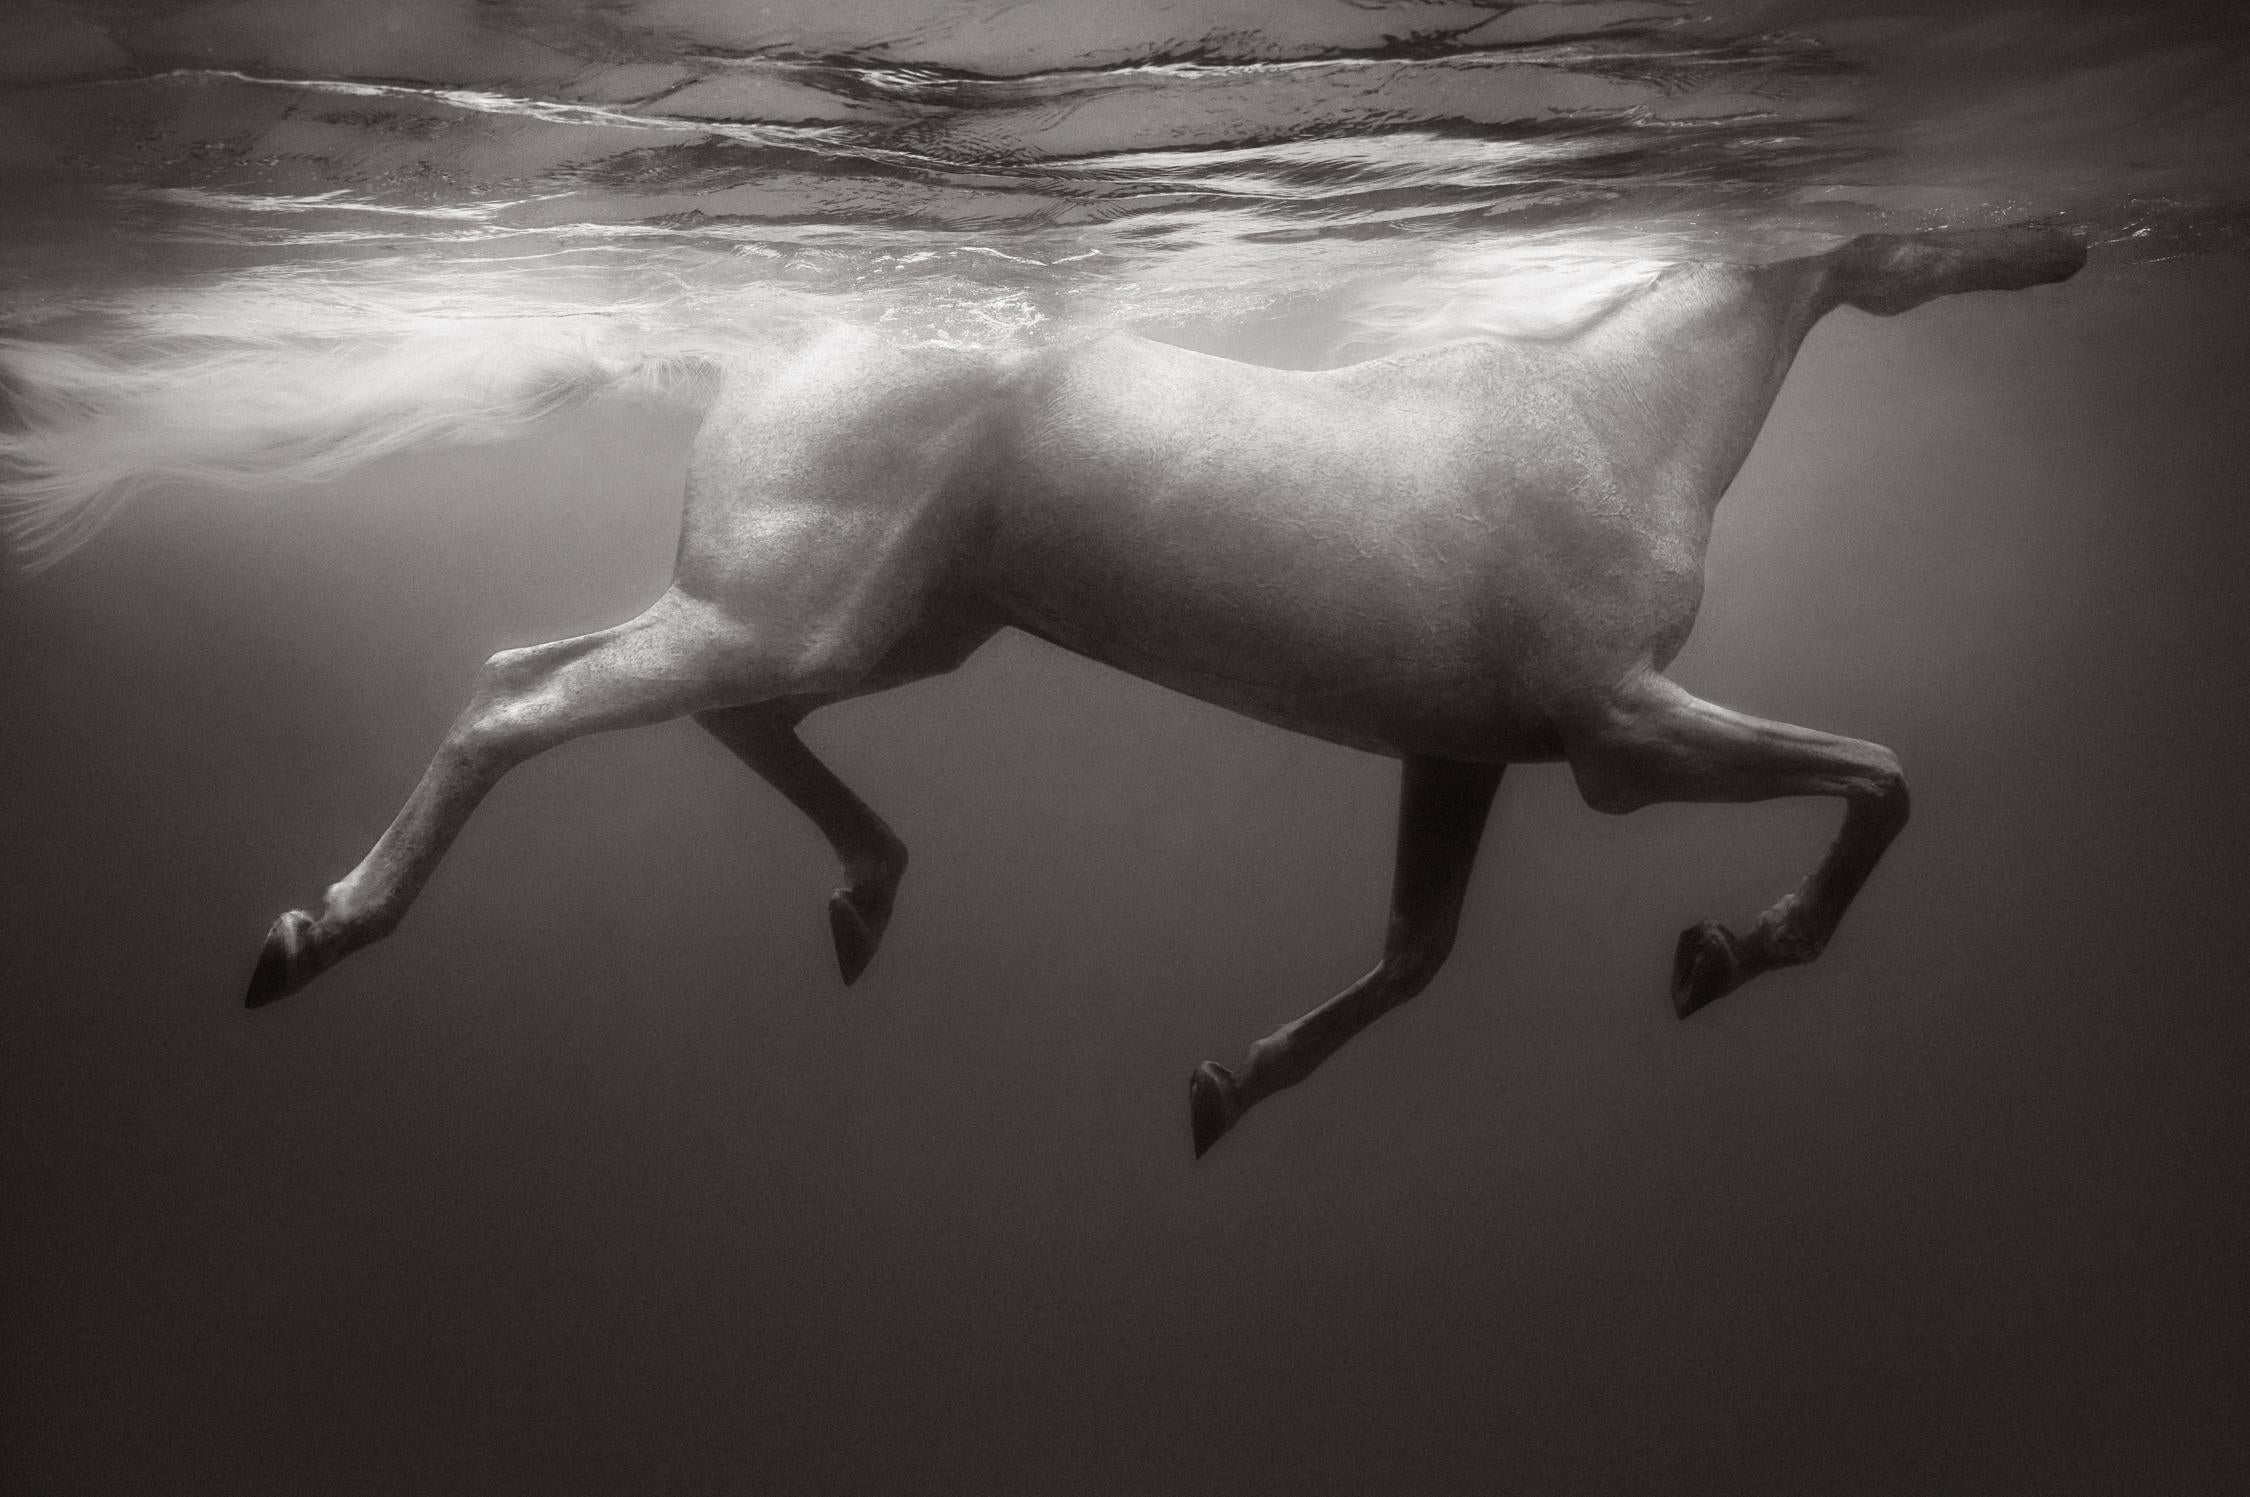 Drew Doggett Black and White Photograph – Otherworldly Weißes weißes Pferd, das unter Wasser schwimmt, Mode inspiriert, Reiter